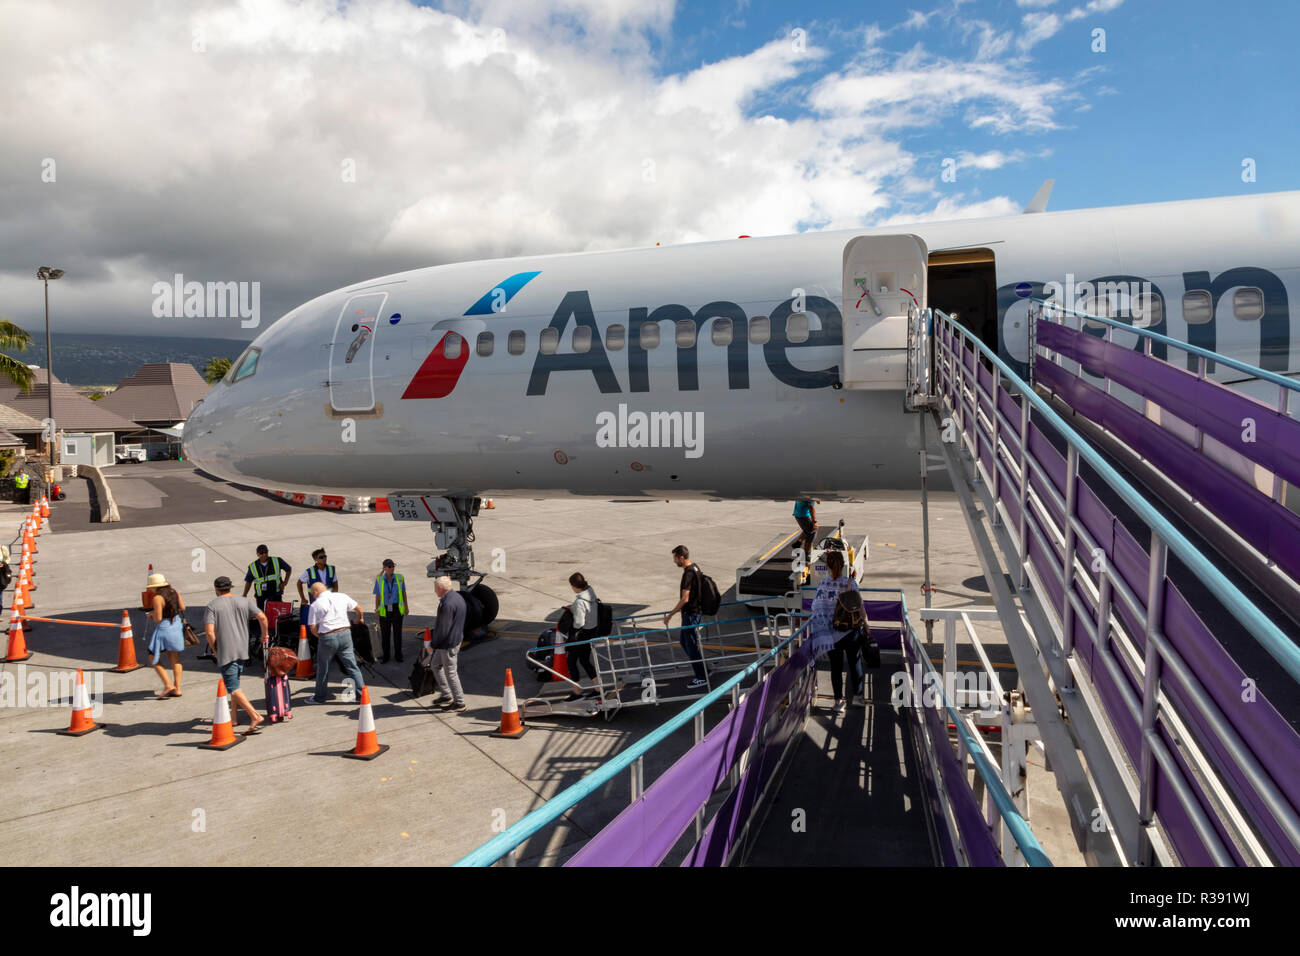 Kailua-Kona, Hawaii - Passeggeri lasciando un American Airlines aereo all'Aeroporto Internazionale di Kona su la Big Island delle Hawaii. Foto Stock